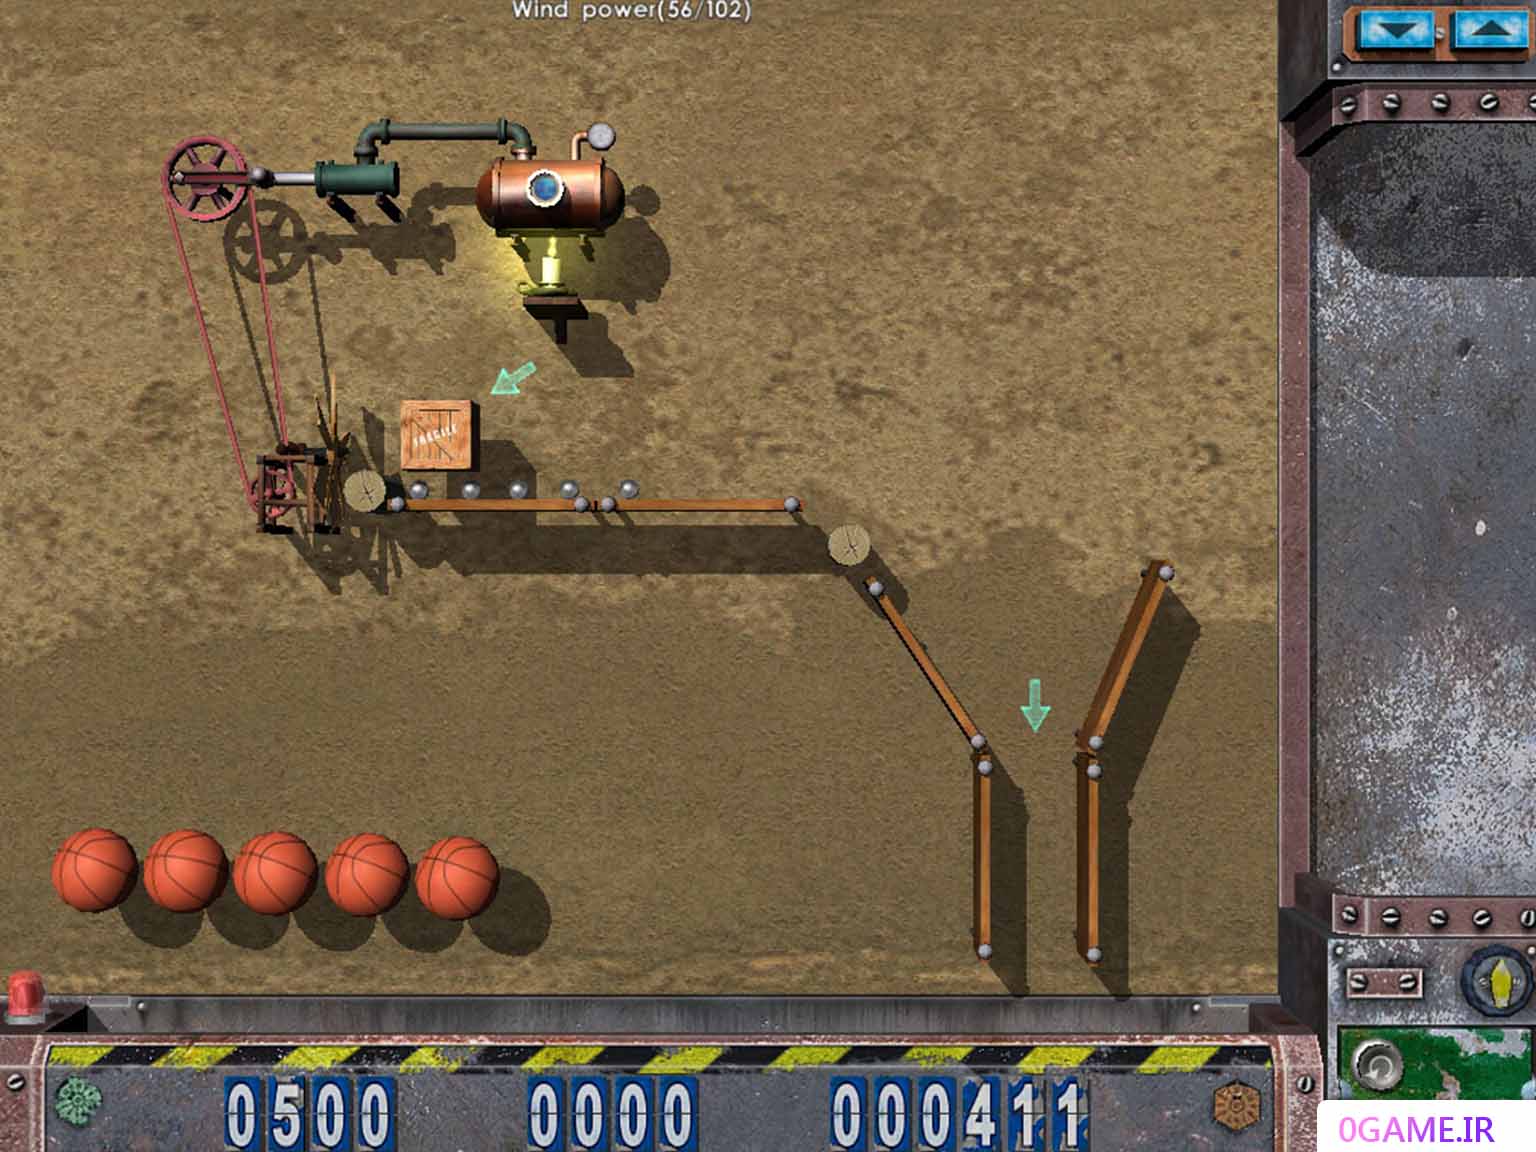 دانلود بازی ماشین های دیوانه 1 (Crazy Machines) نسخه کامل برای کامپیوتر